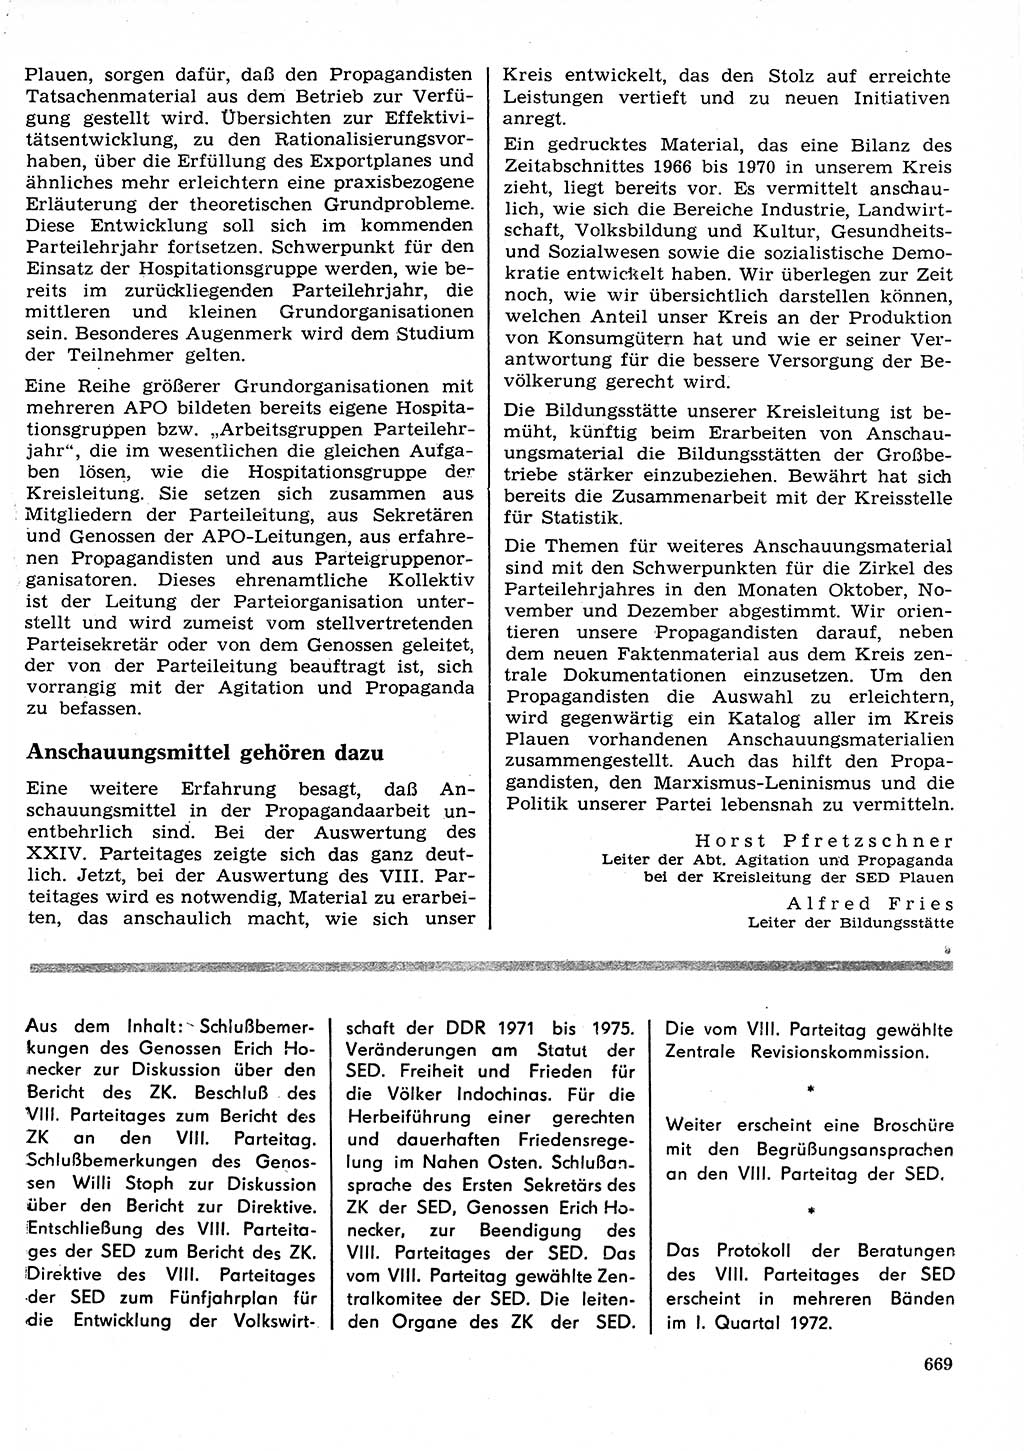 Neuer Weg (NW), Organ des Zentralkomitees (ZK) der SED (Sozialistische Einheitspartei Deutschlands) für Fragen des Parteilebens, 26. Jahrgang [Deutsche Demokratische Republik (DDR)] 1971, Seite 669 (NW ZK SED DDR 1971, S. 669)